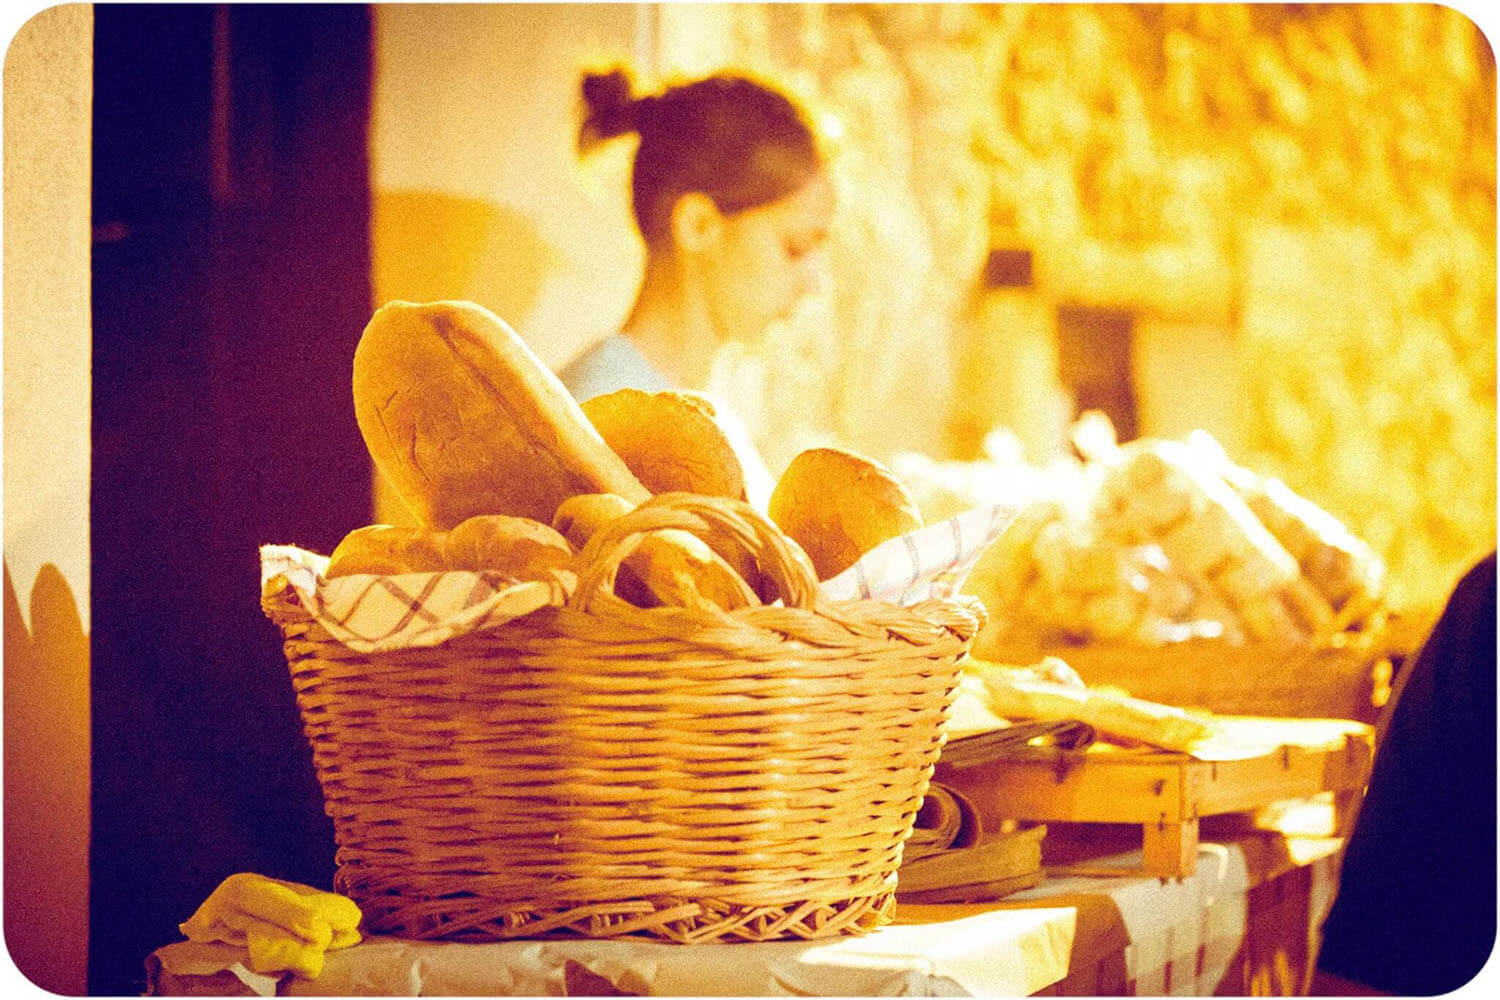 Festa del pane 2022 - Dal 27 al 31 luglio - Trentinara